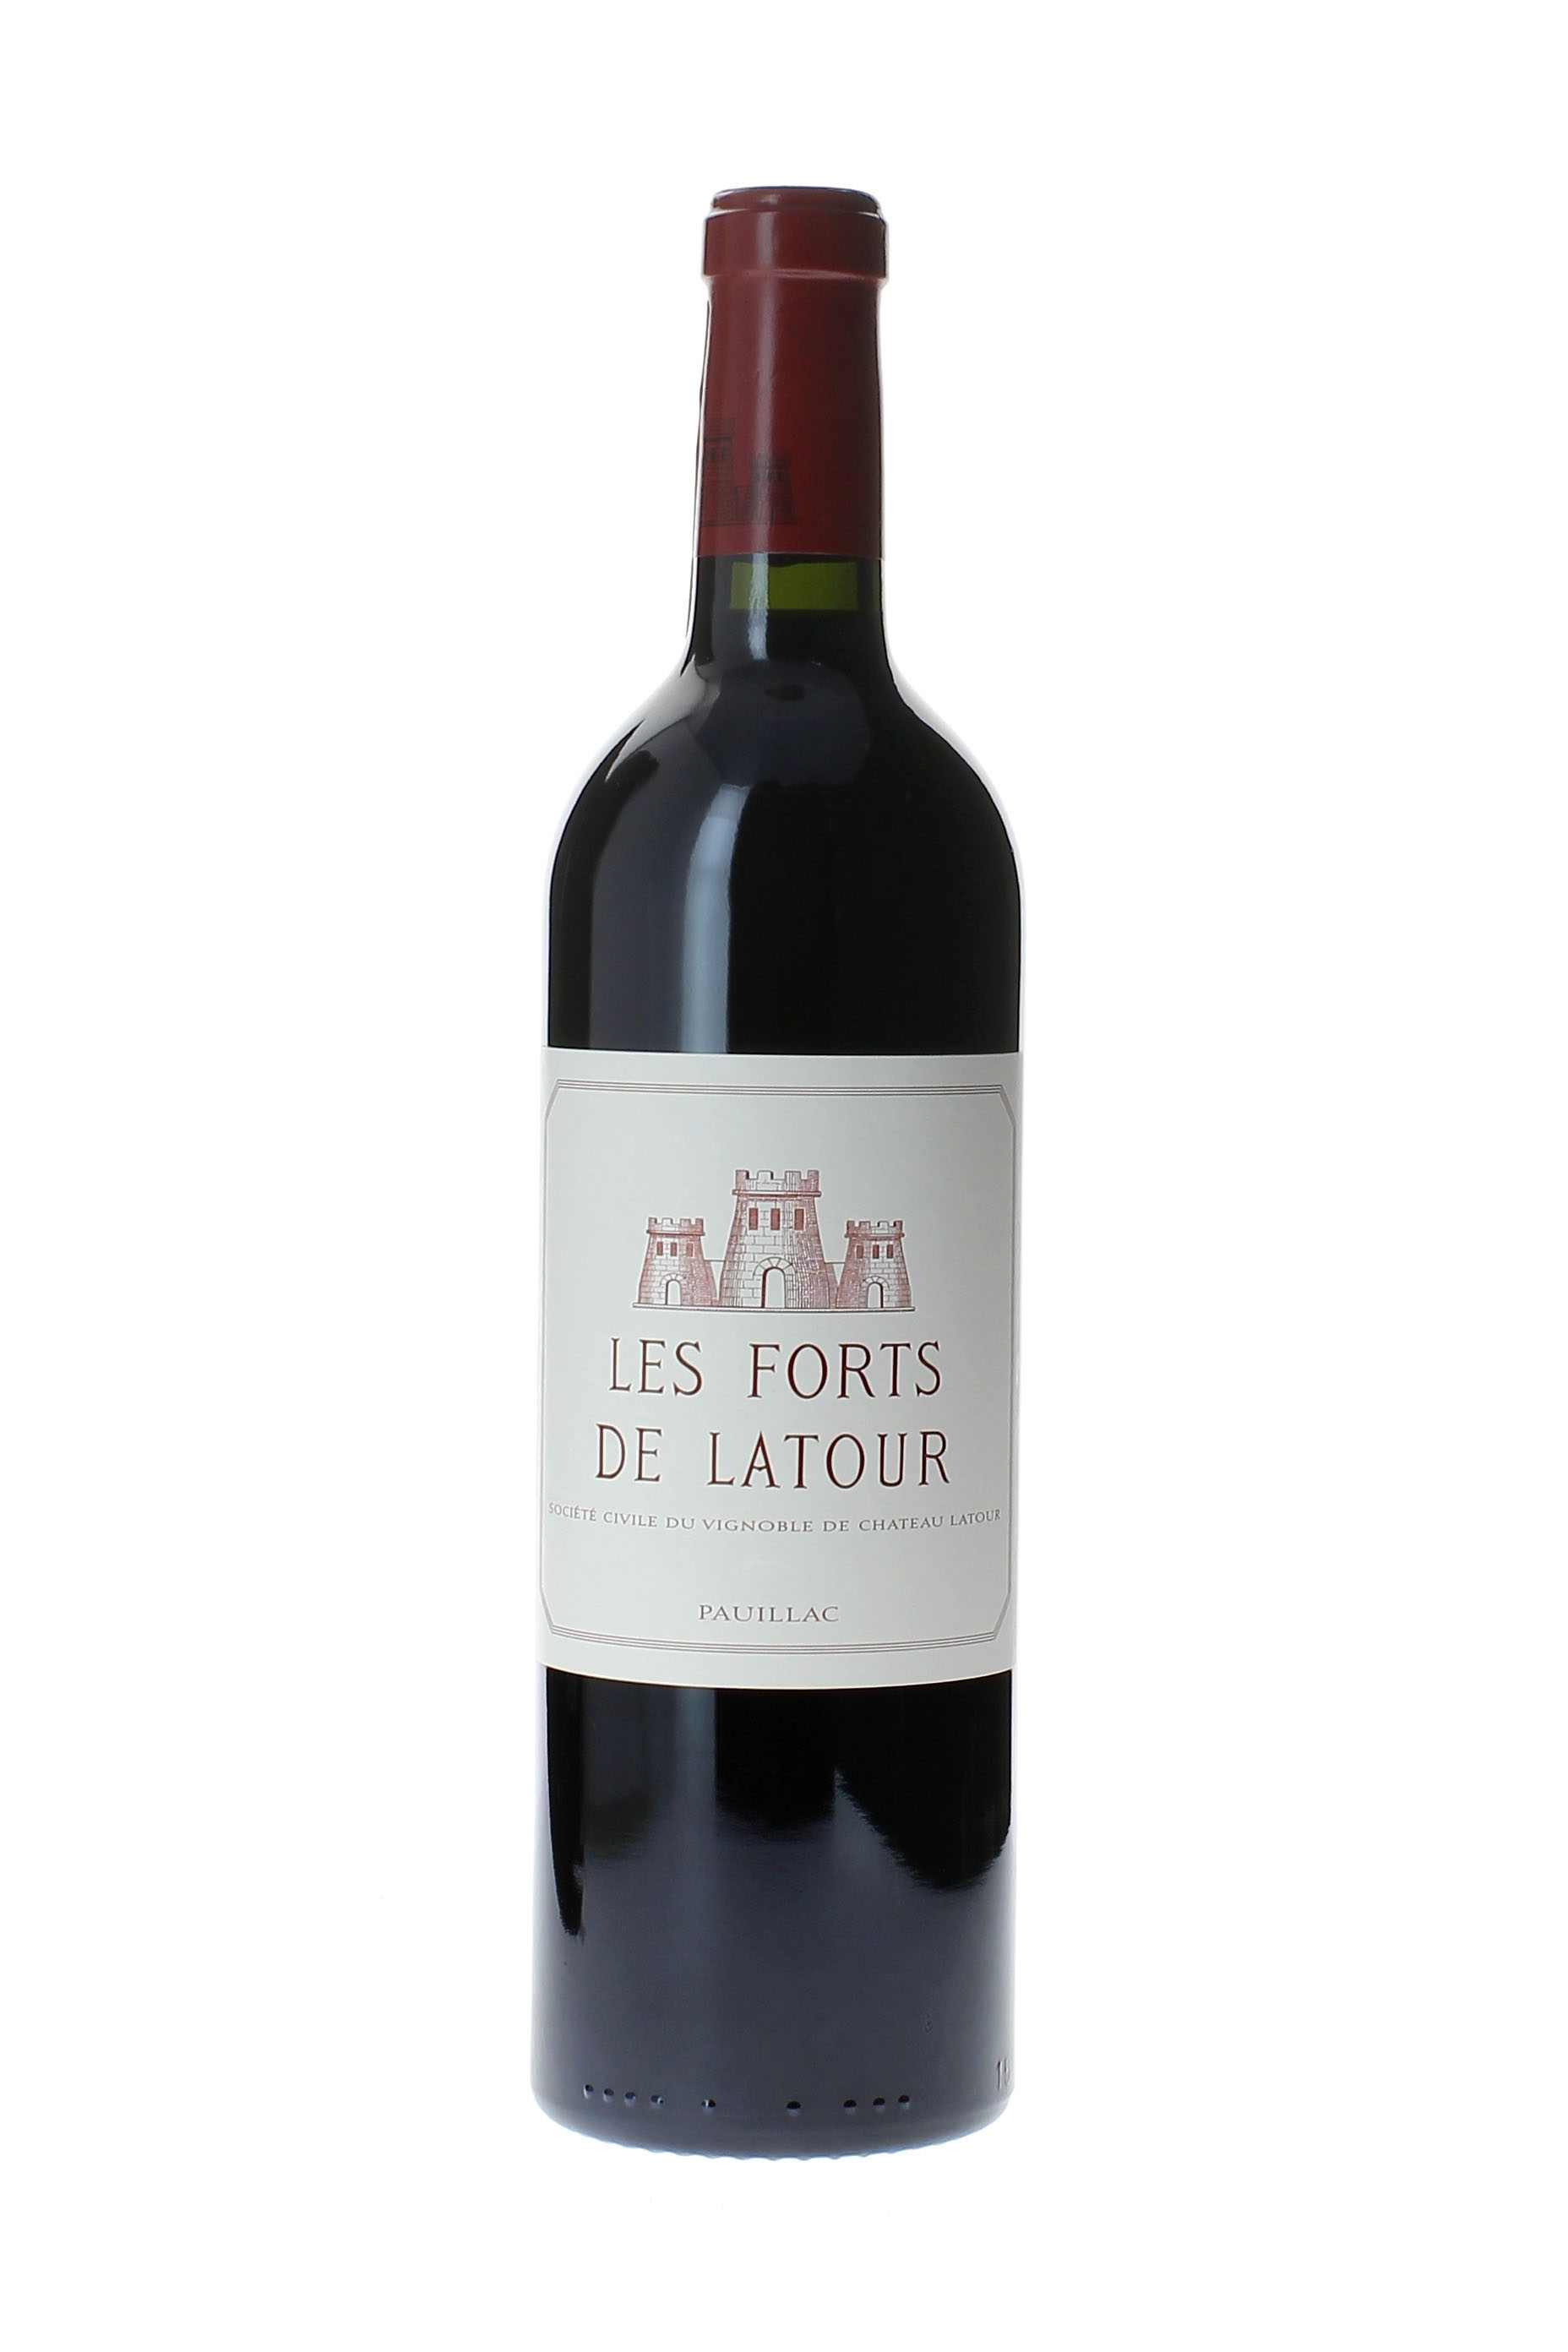 Forts de latour 1993 2me vin de LATOUR Pauillac, Bordeaux rouge